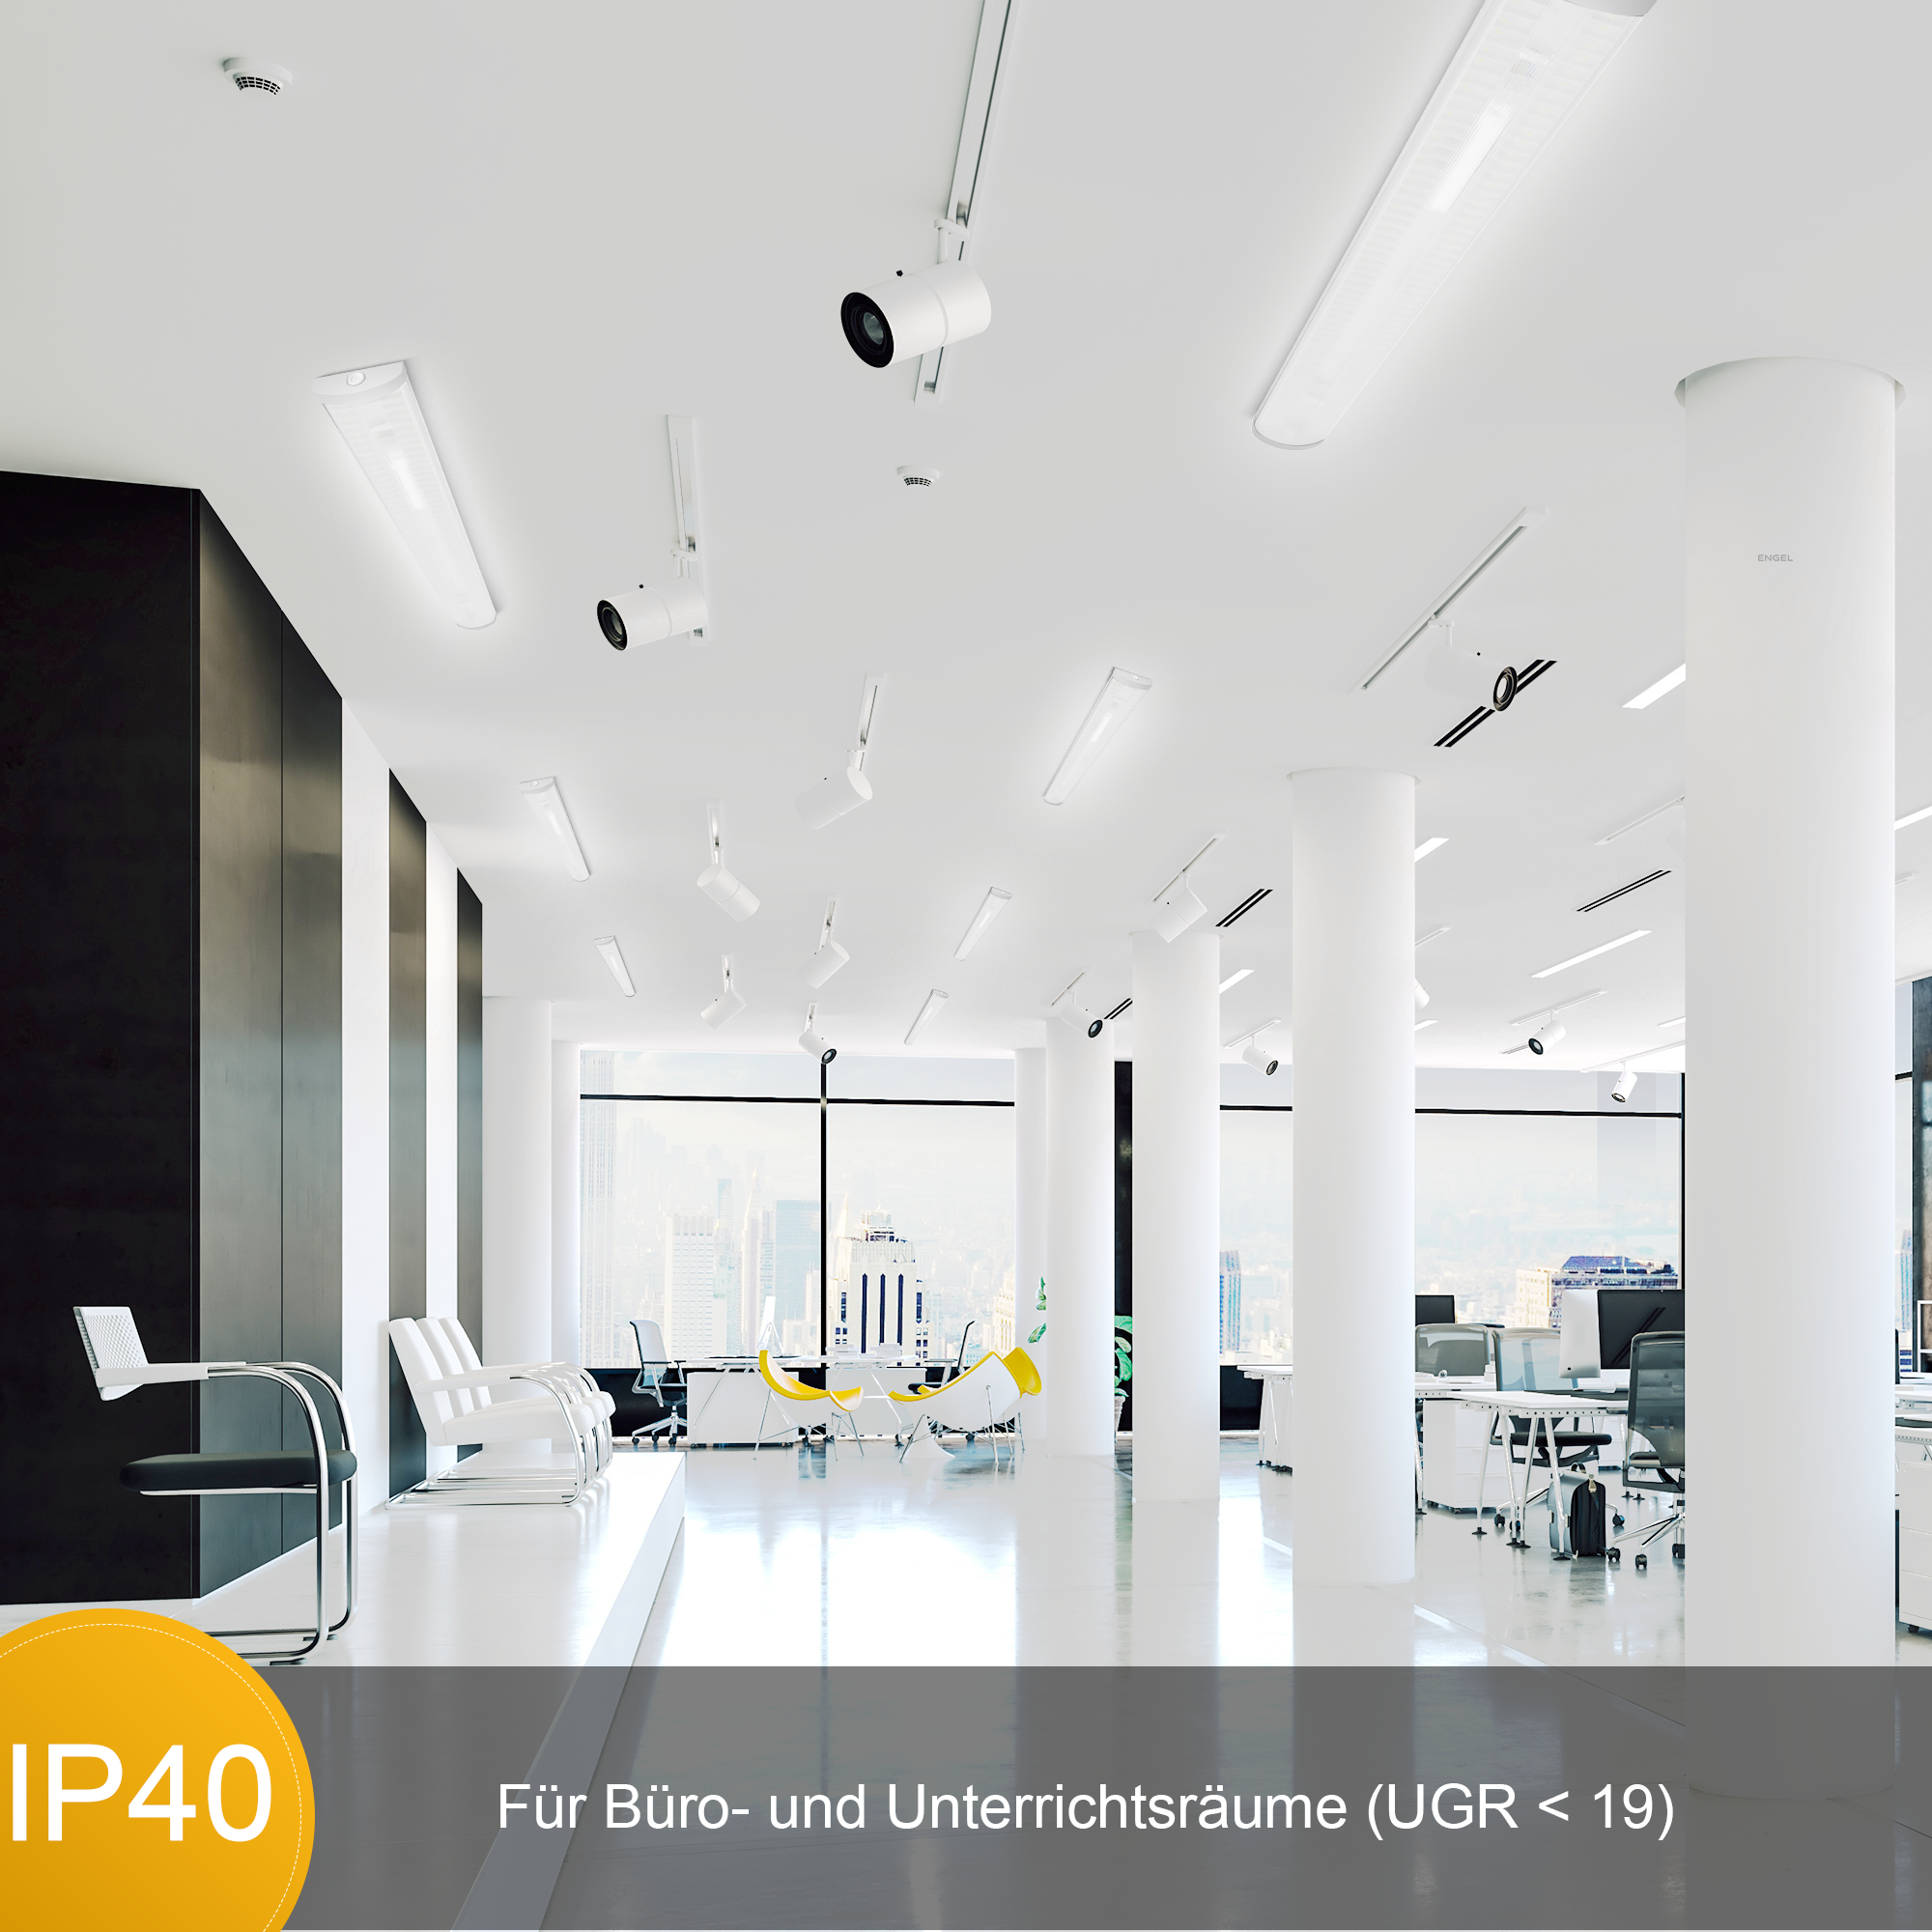 Engel LED Büroleuchte 60-170cm - IP40 UGR 19 Stahlblech Deckenaufhellung Arbeitsplatzleuchte 5 Jahre Garantie